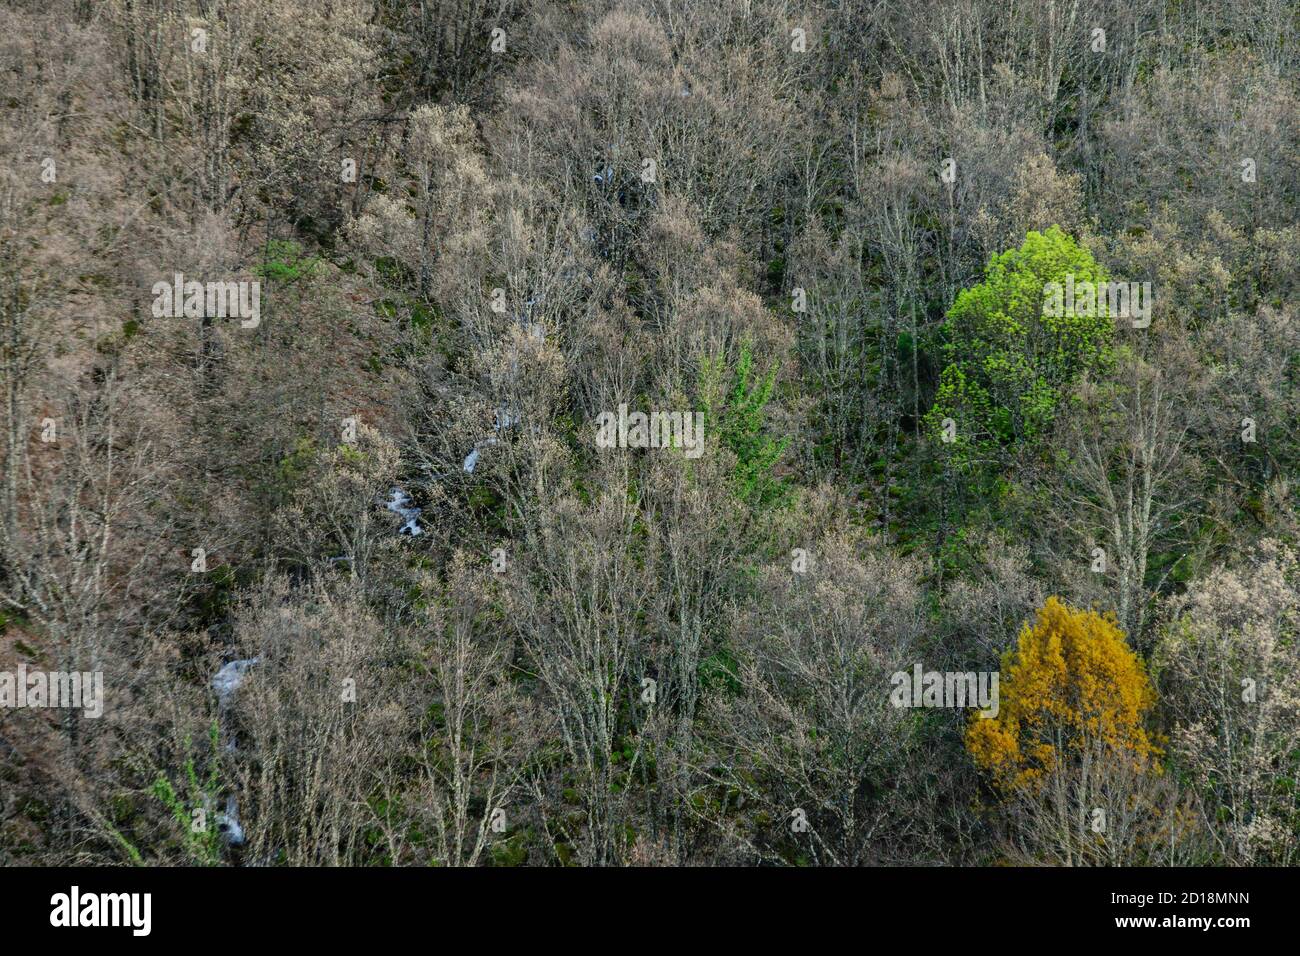 bosque caducifolio, reserva natural Garganta de los Infiernos, sierra de Tormantos, valle del Jerte, Cáceres, Extremadura, Spain, europa Stock Photo